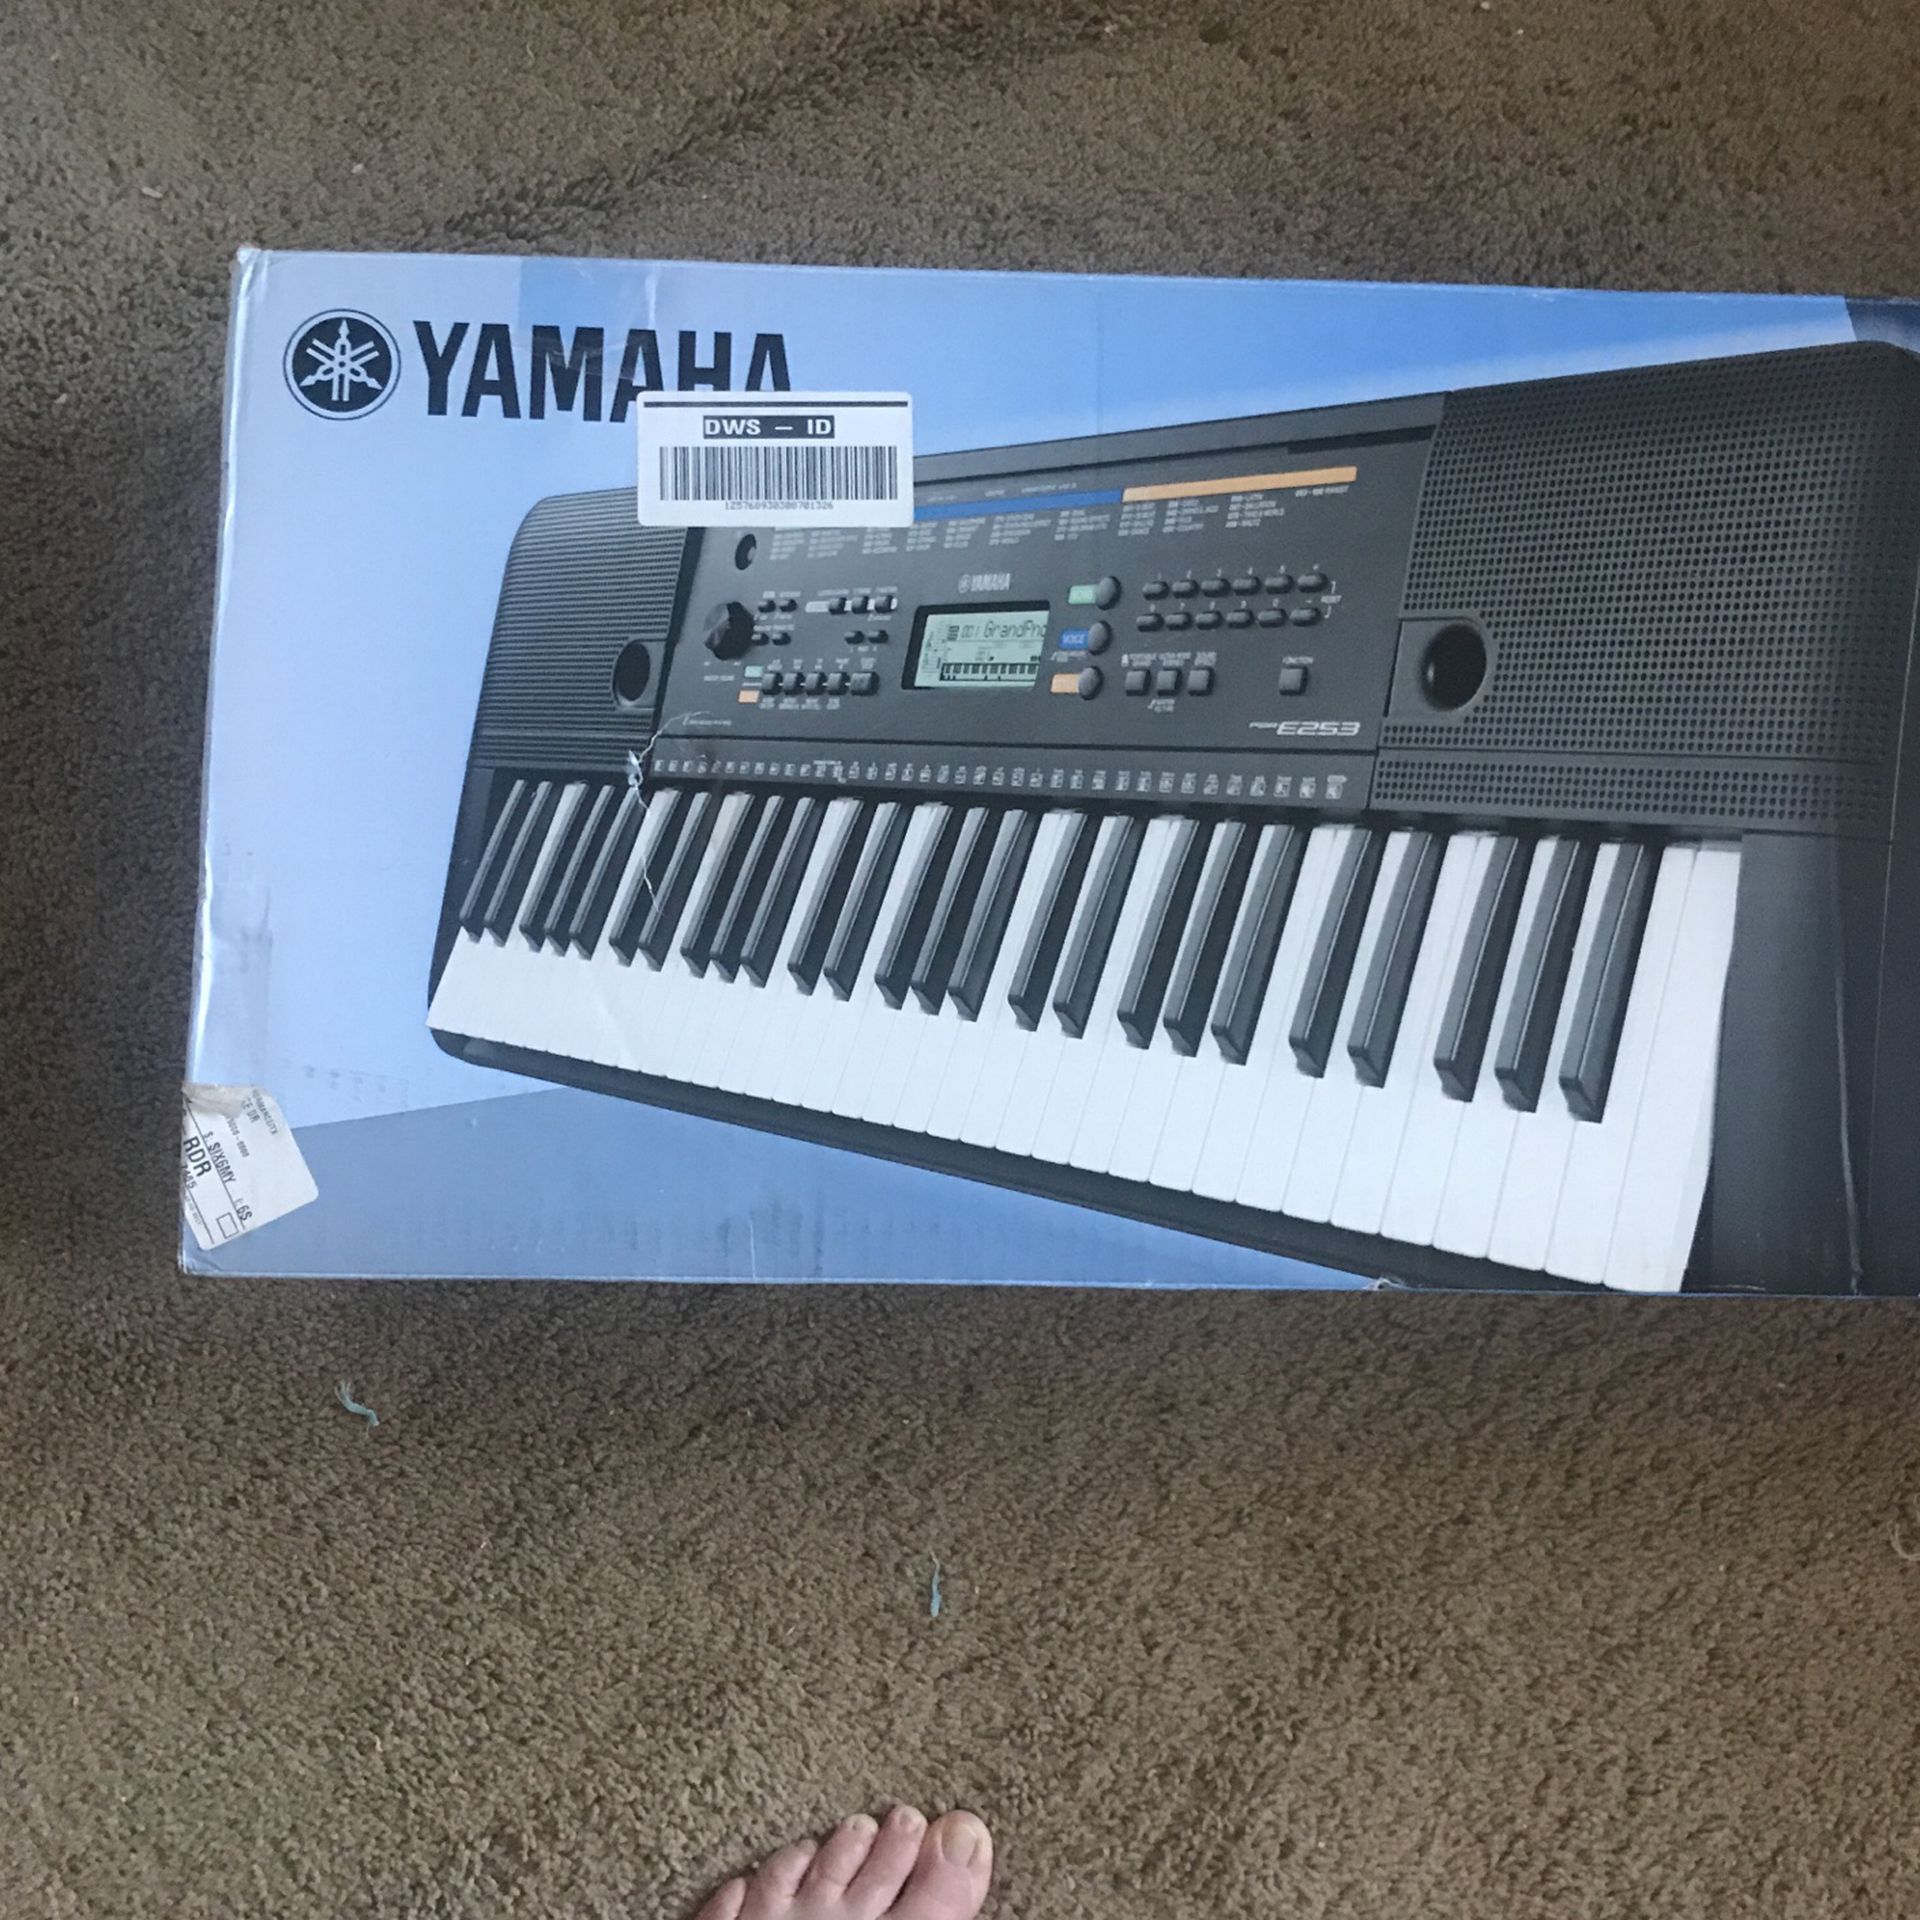 Yamaha digital keyboard